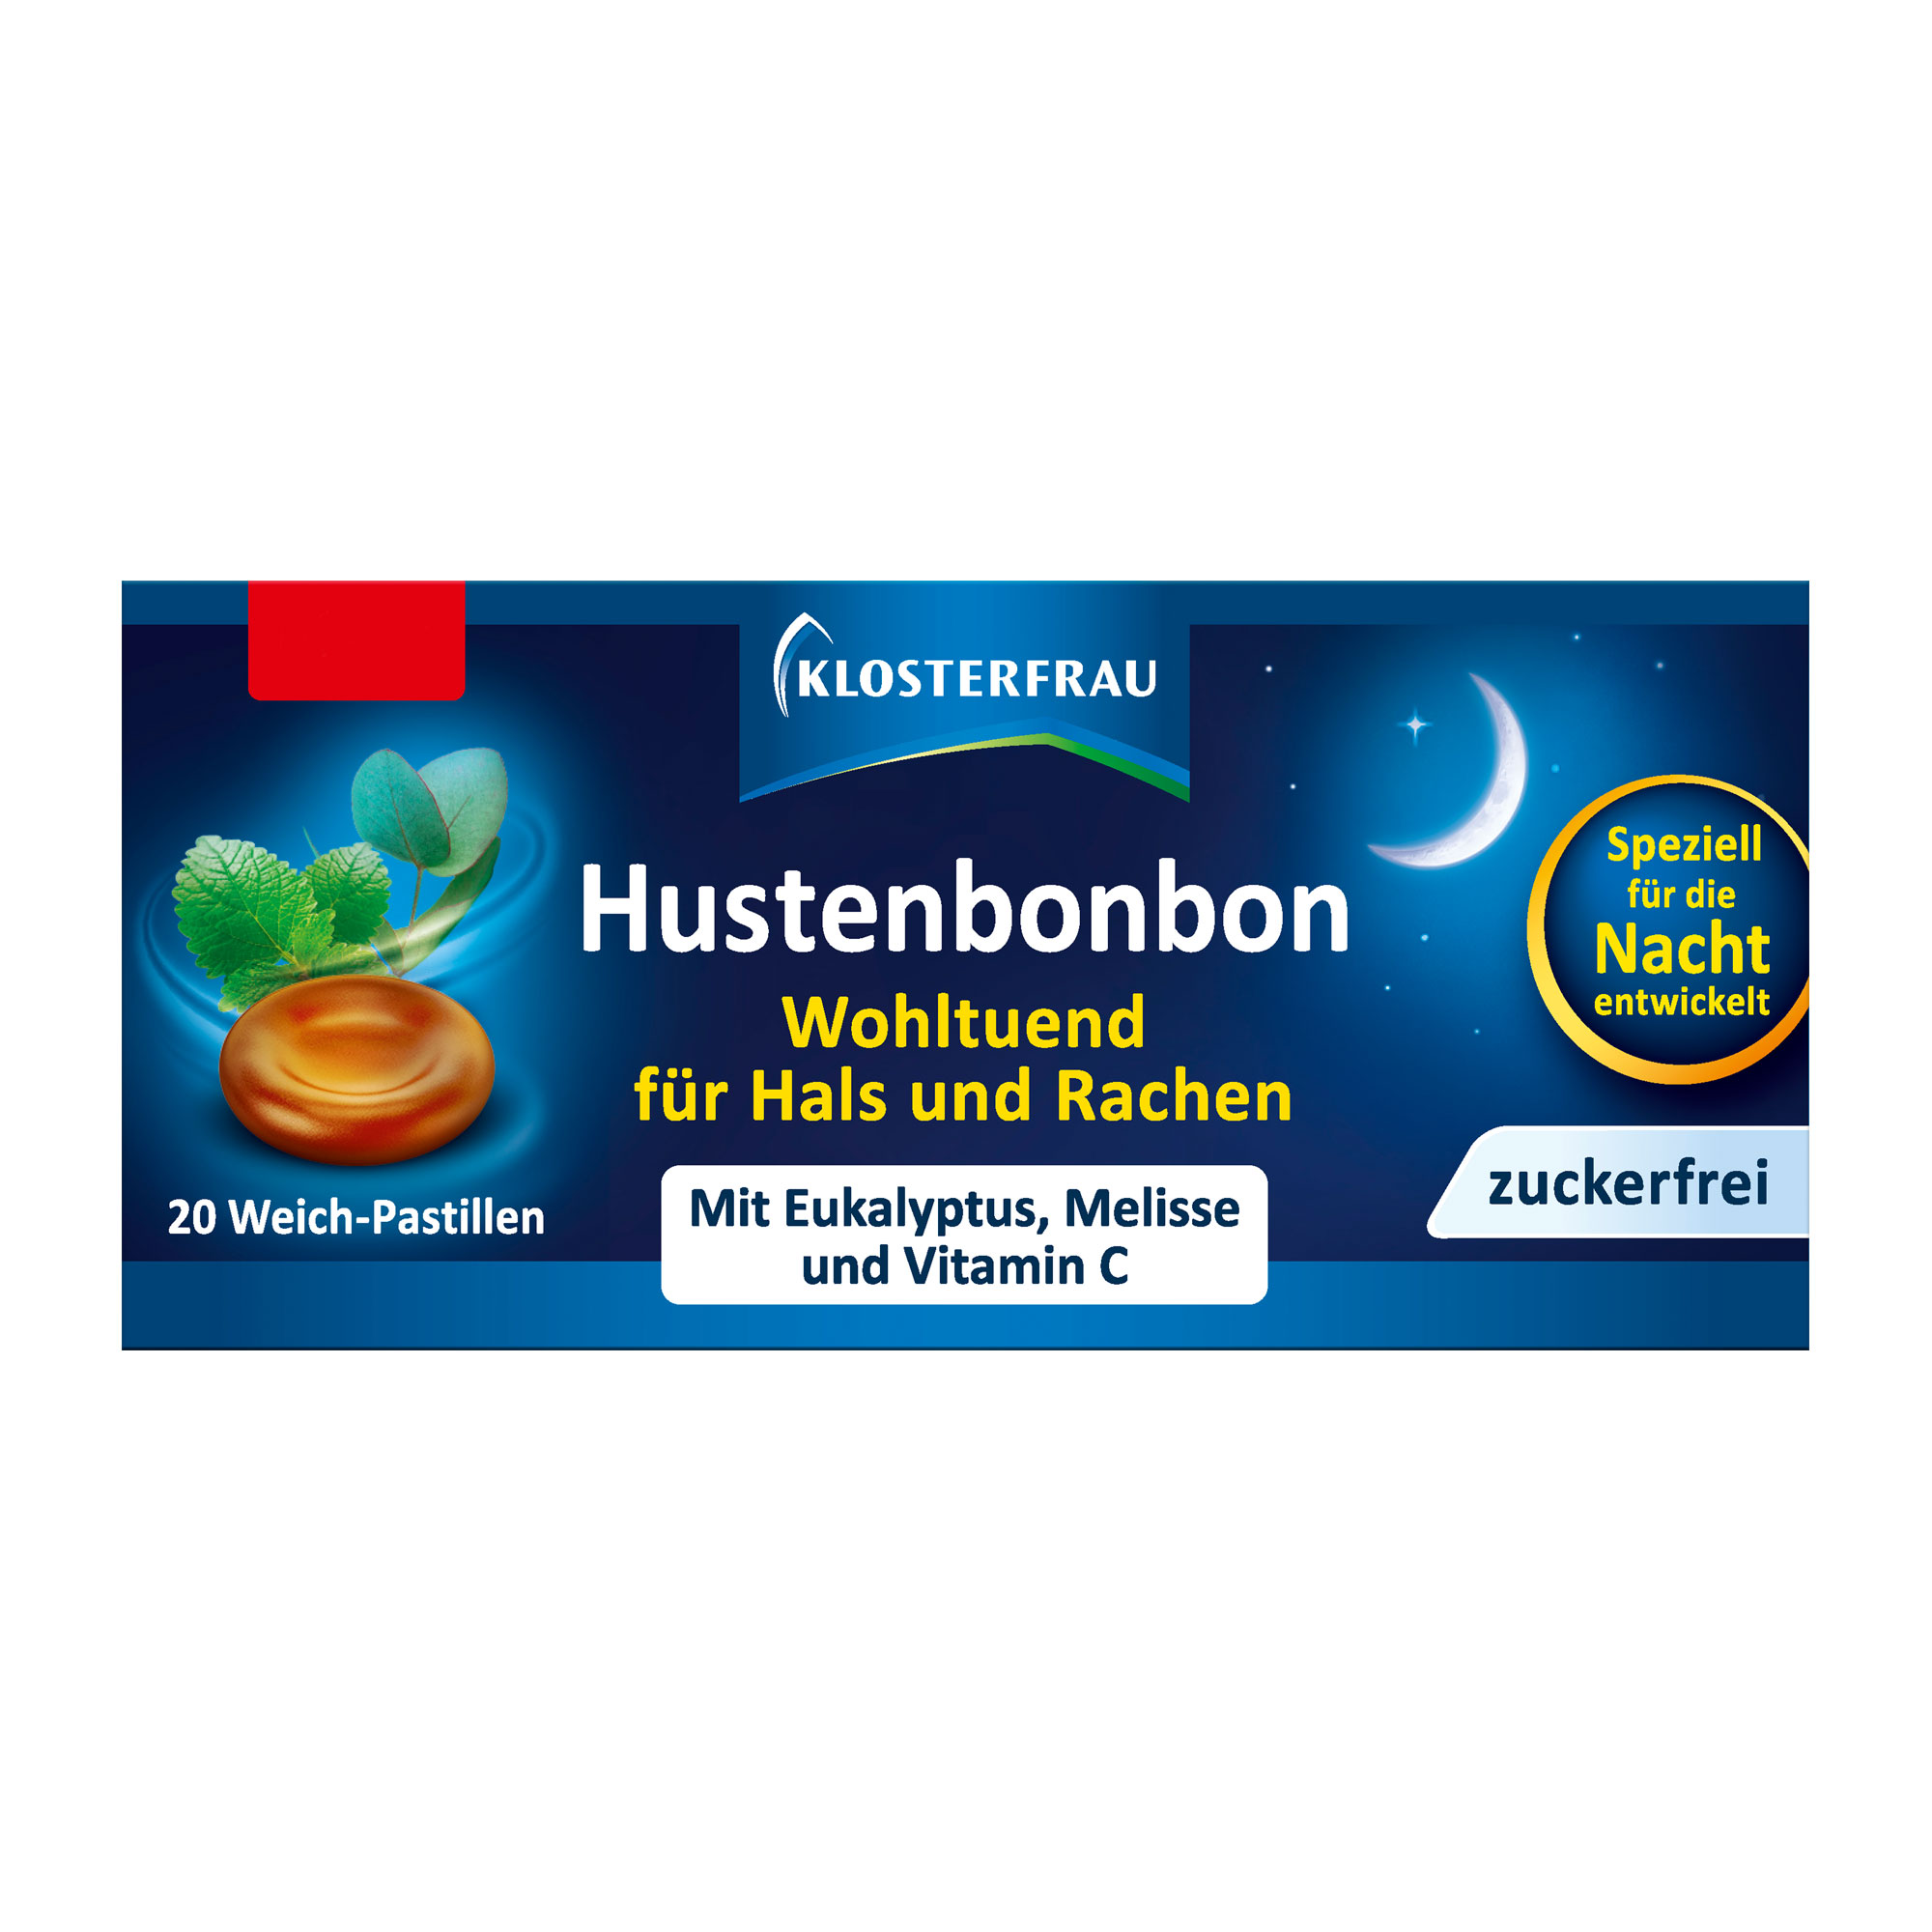 Hustenbonbon mit Vitamin C. Wohltuend für Hals & Rachen.